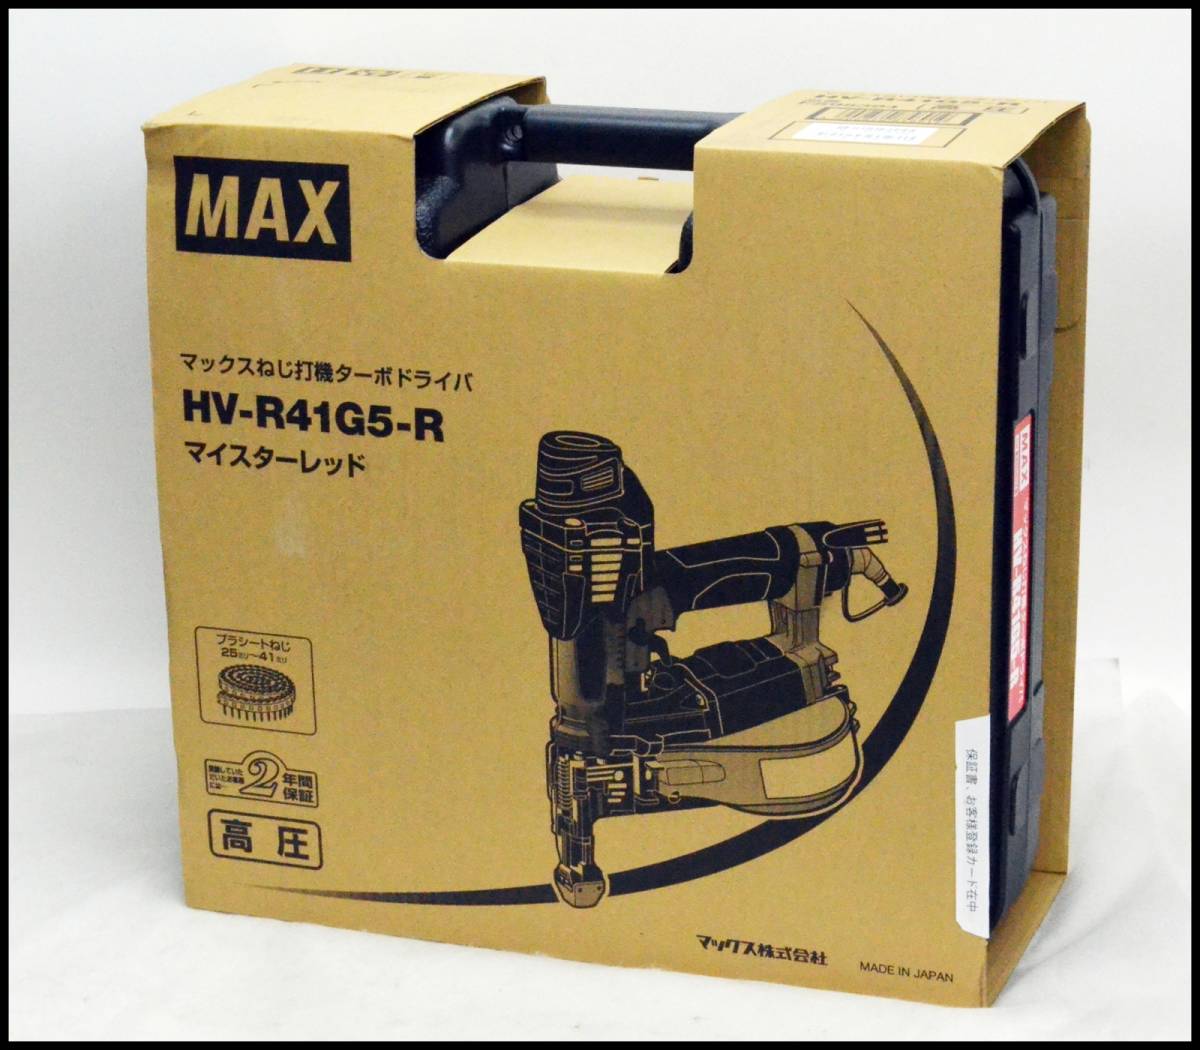 未使用 マックス MAX ターボドライバ HV-R41G5-R マイスターレッド 高圧ねじ打ち機 エアネジ打機 HV-R41G5（HV-R41G4の後継)